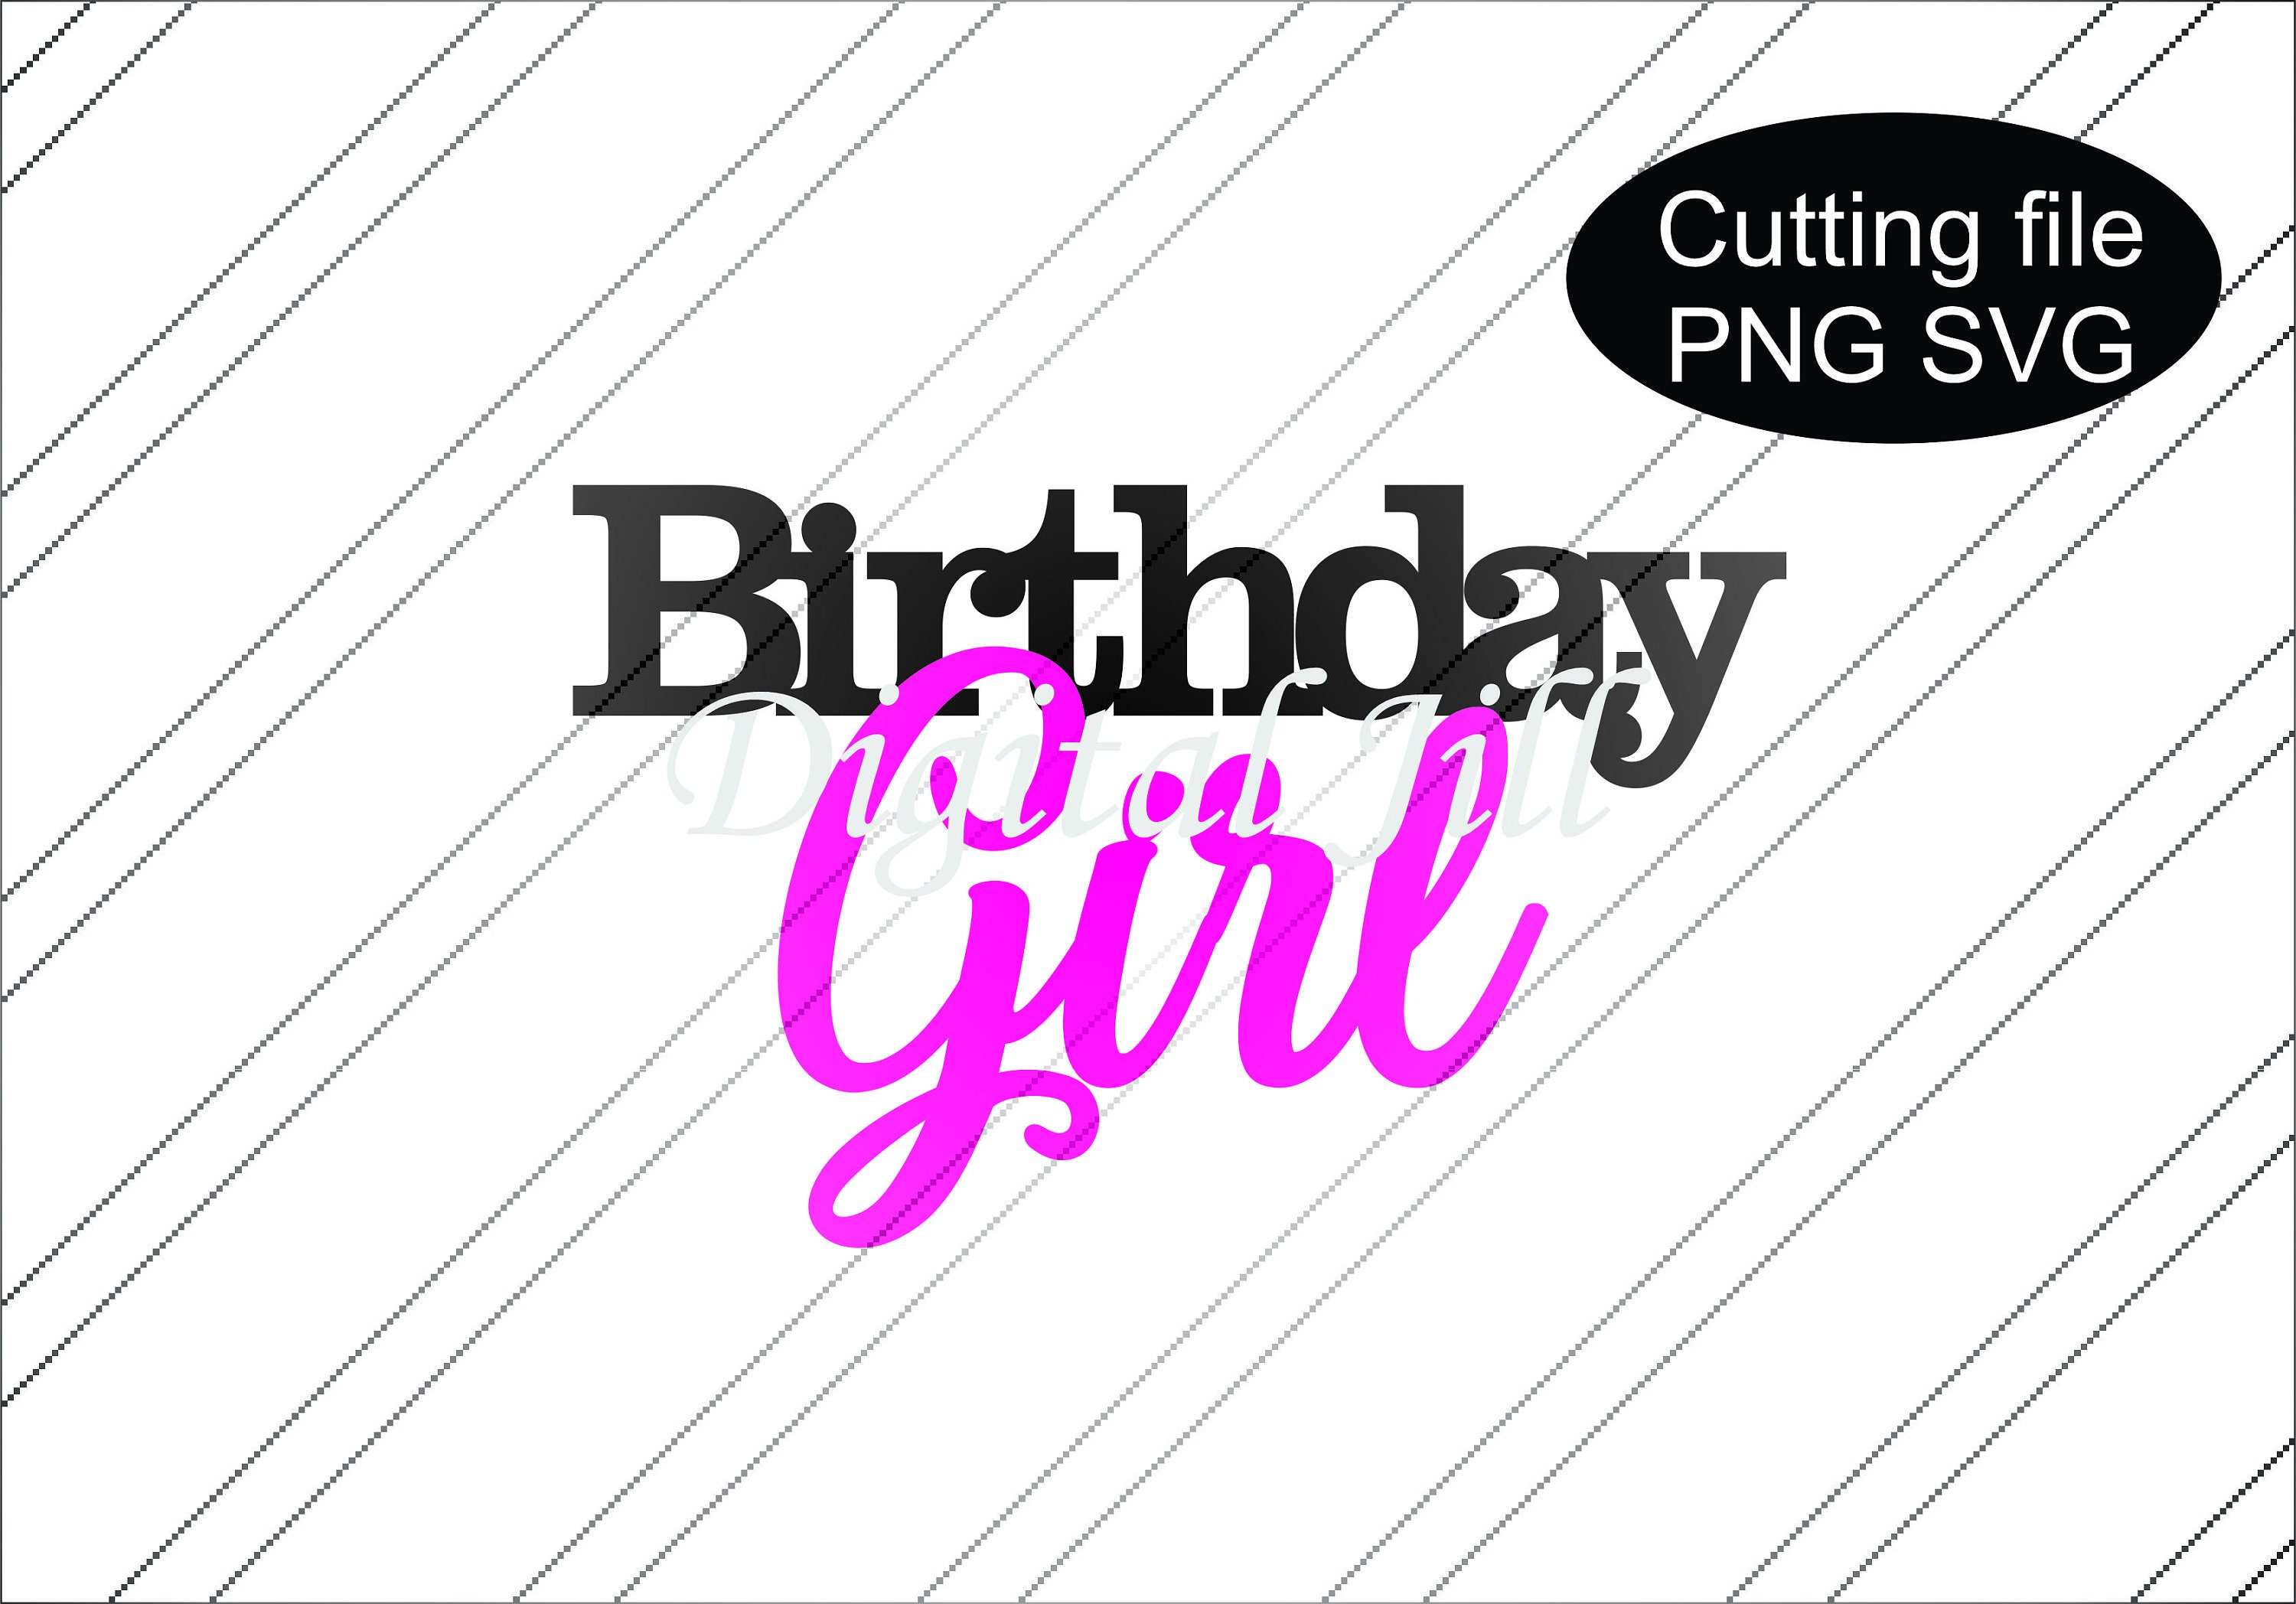 Birthday girl cake topper svg file. Birthday girl cake topper | Etsy